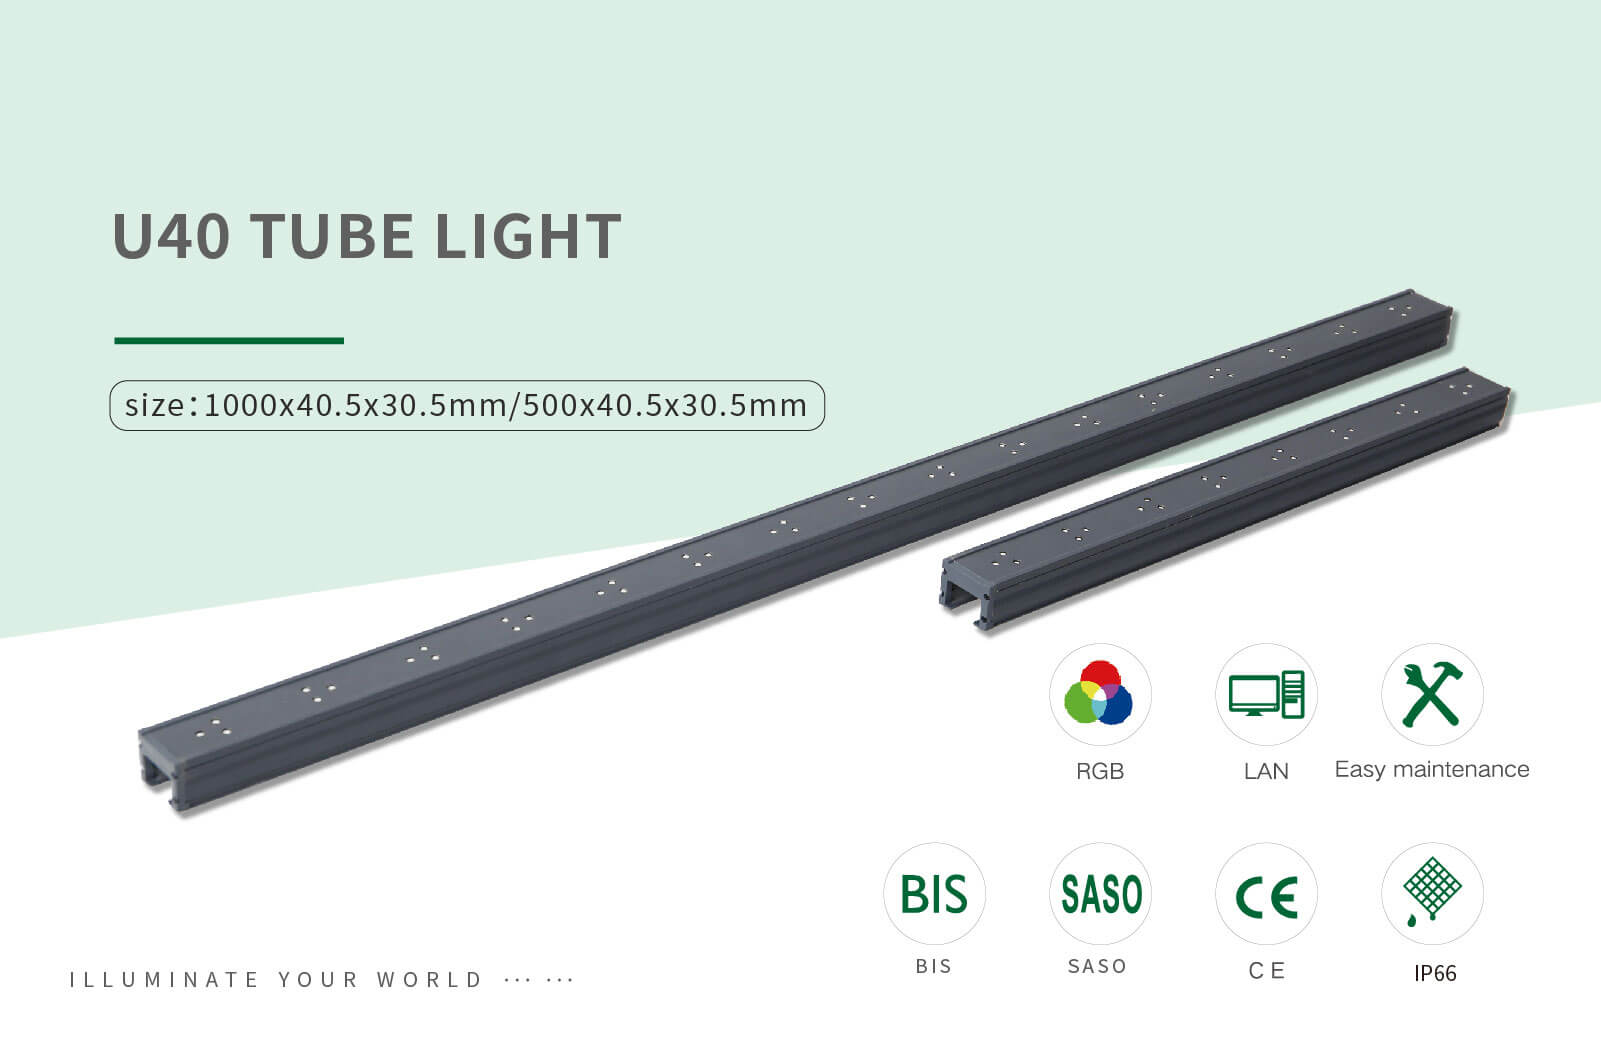 U40 tube light 04 1